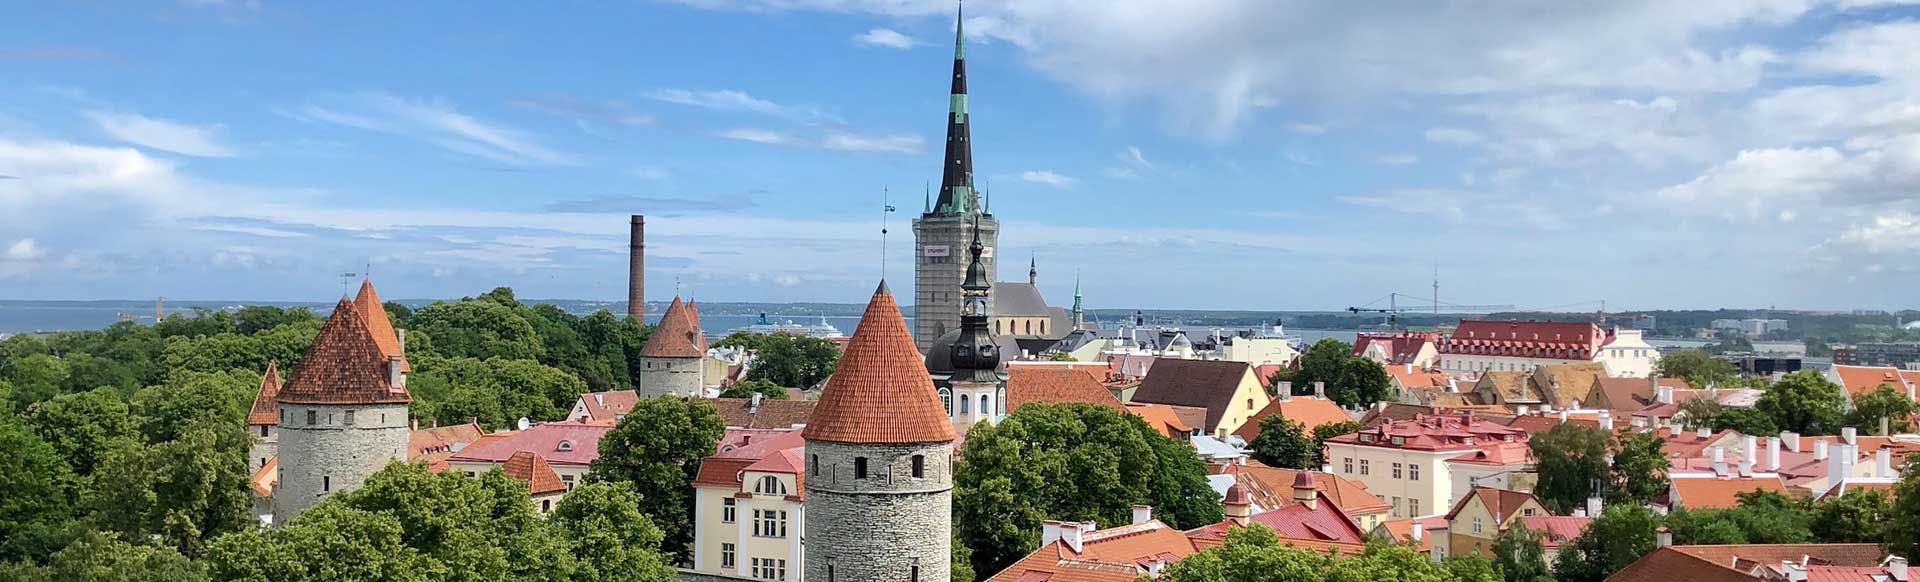 Search Hotels in Estonia